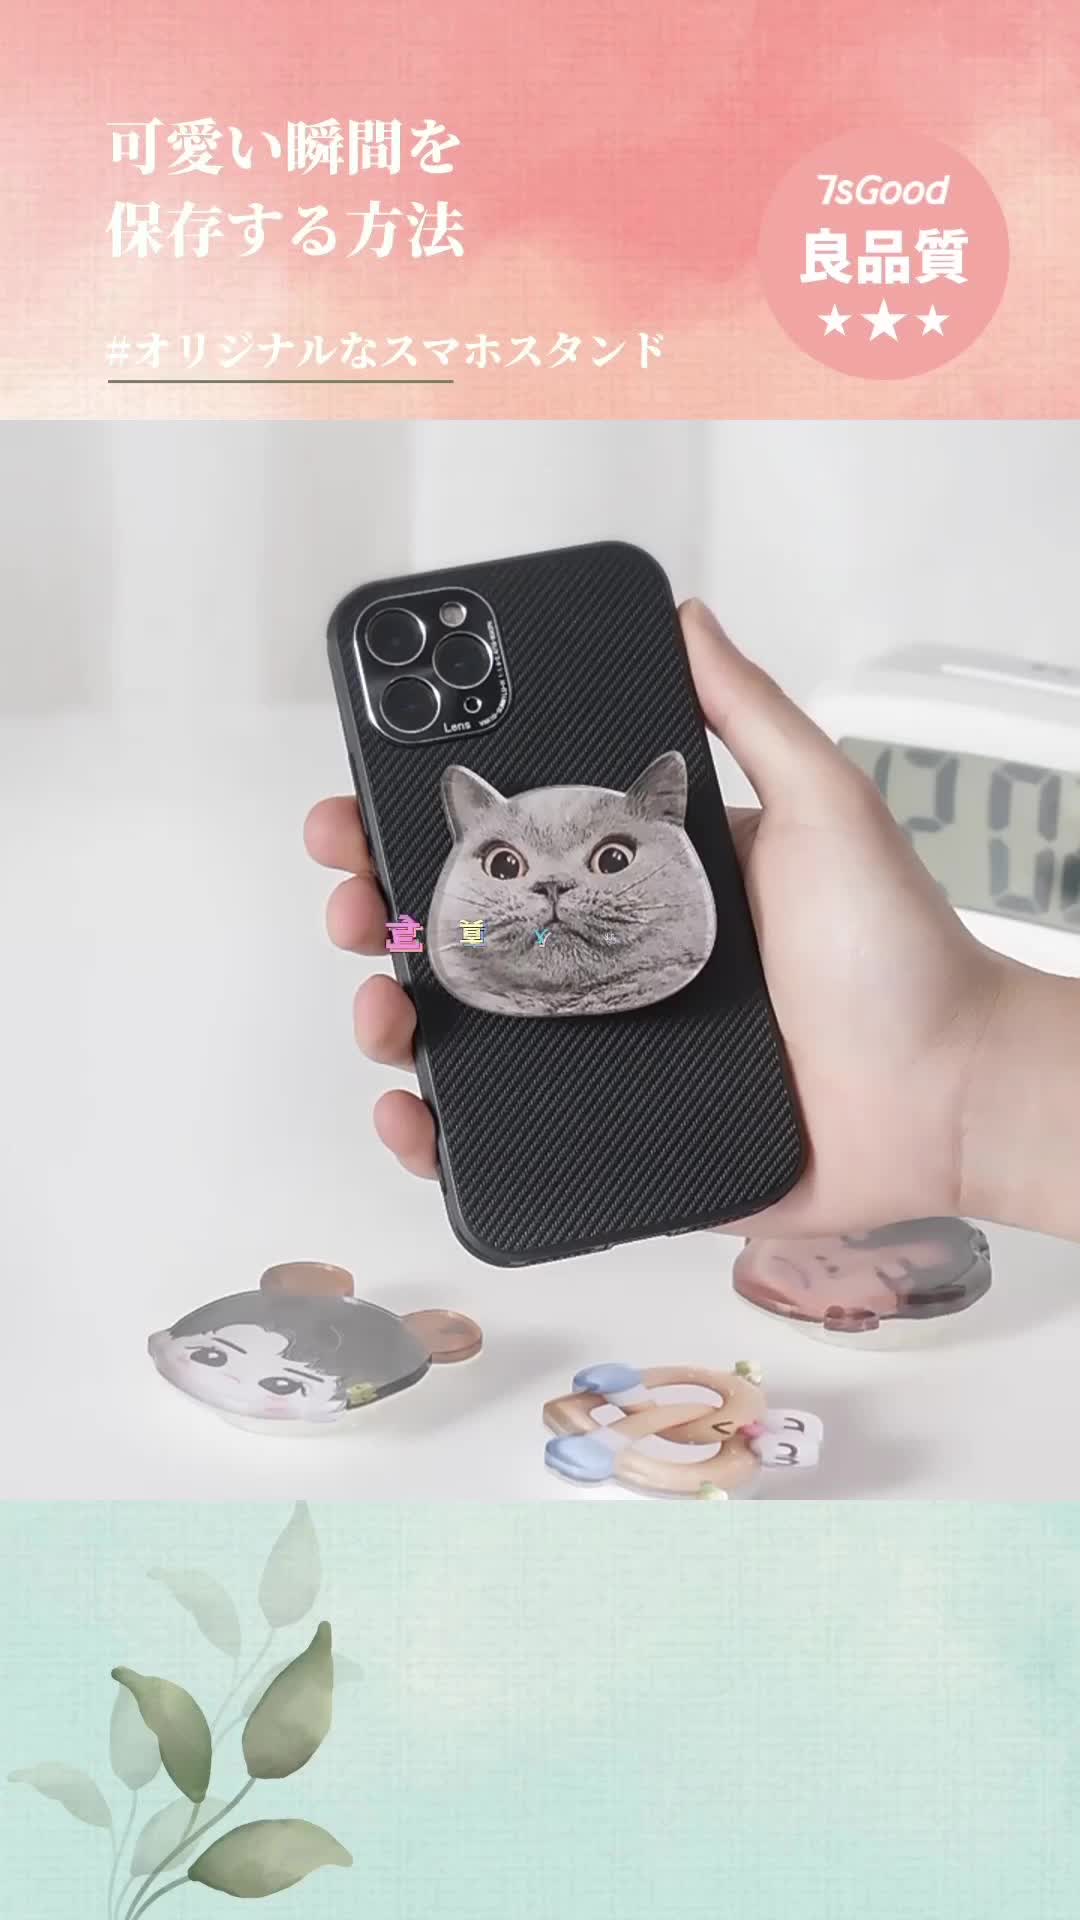 価格交渉OK送料無料 クリア 猫 肉球 スマホアクセ iPhone スマホスタンド 韓国